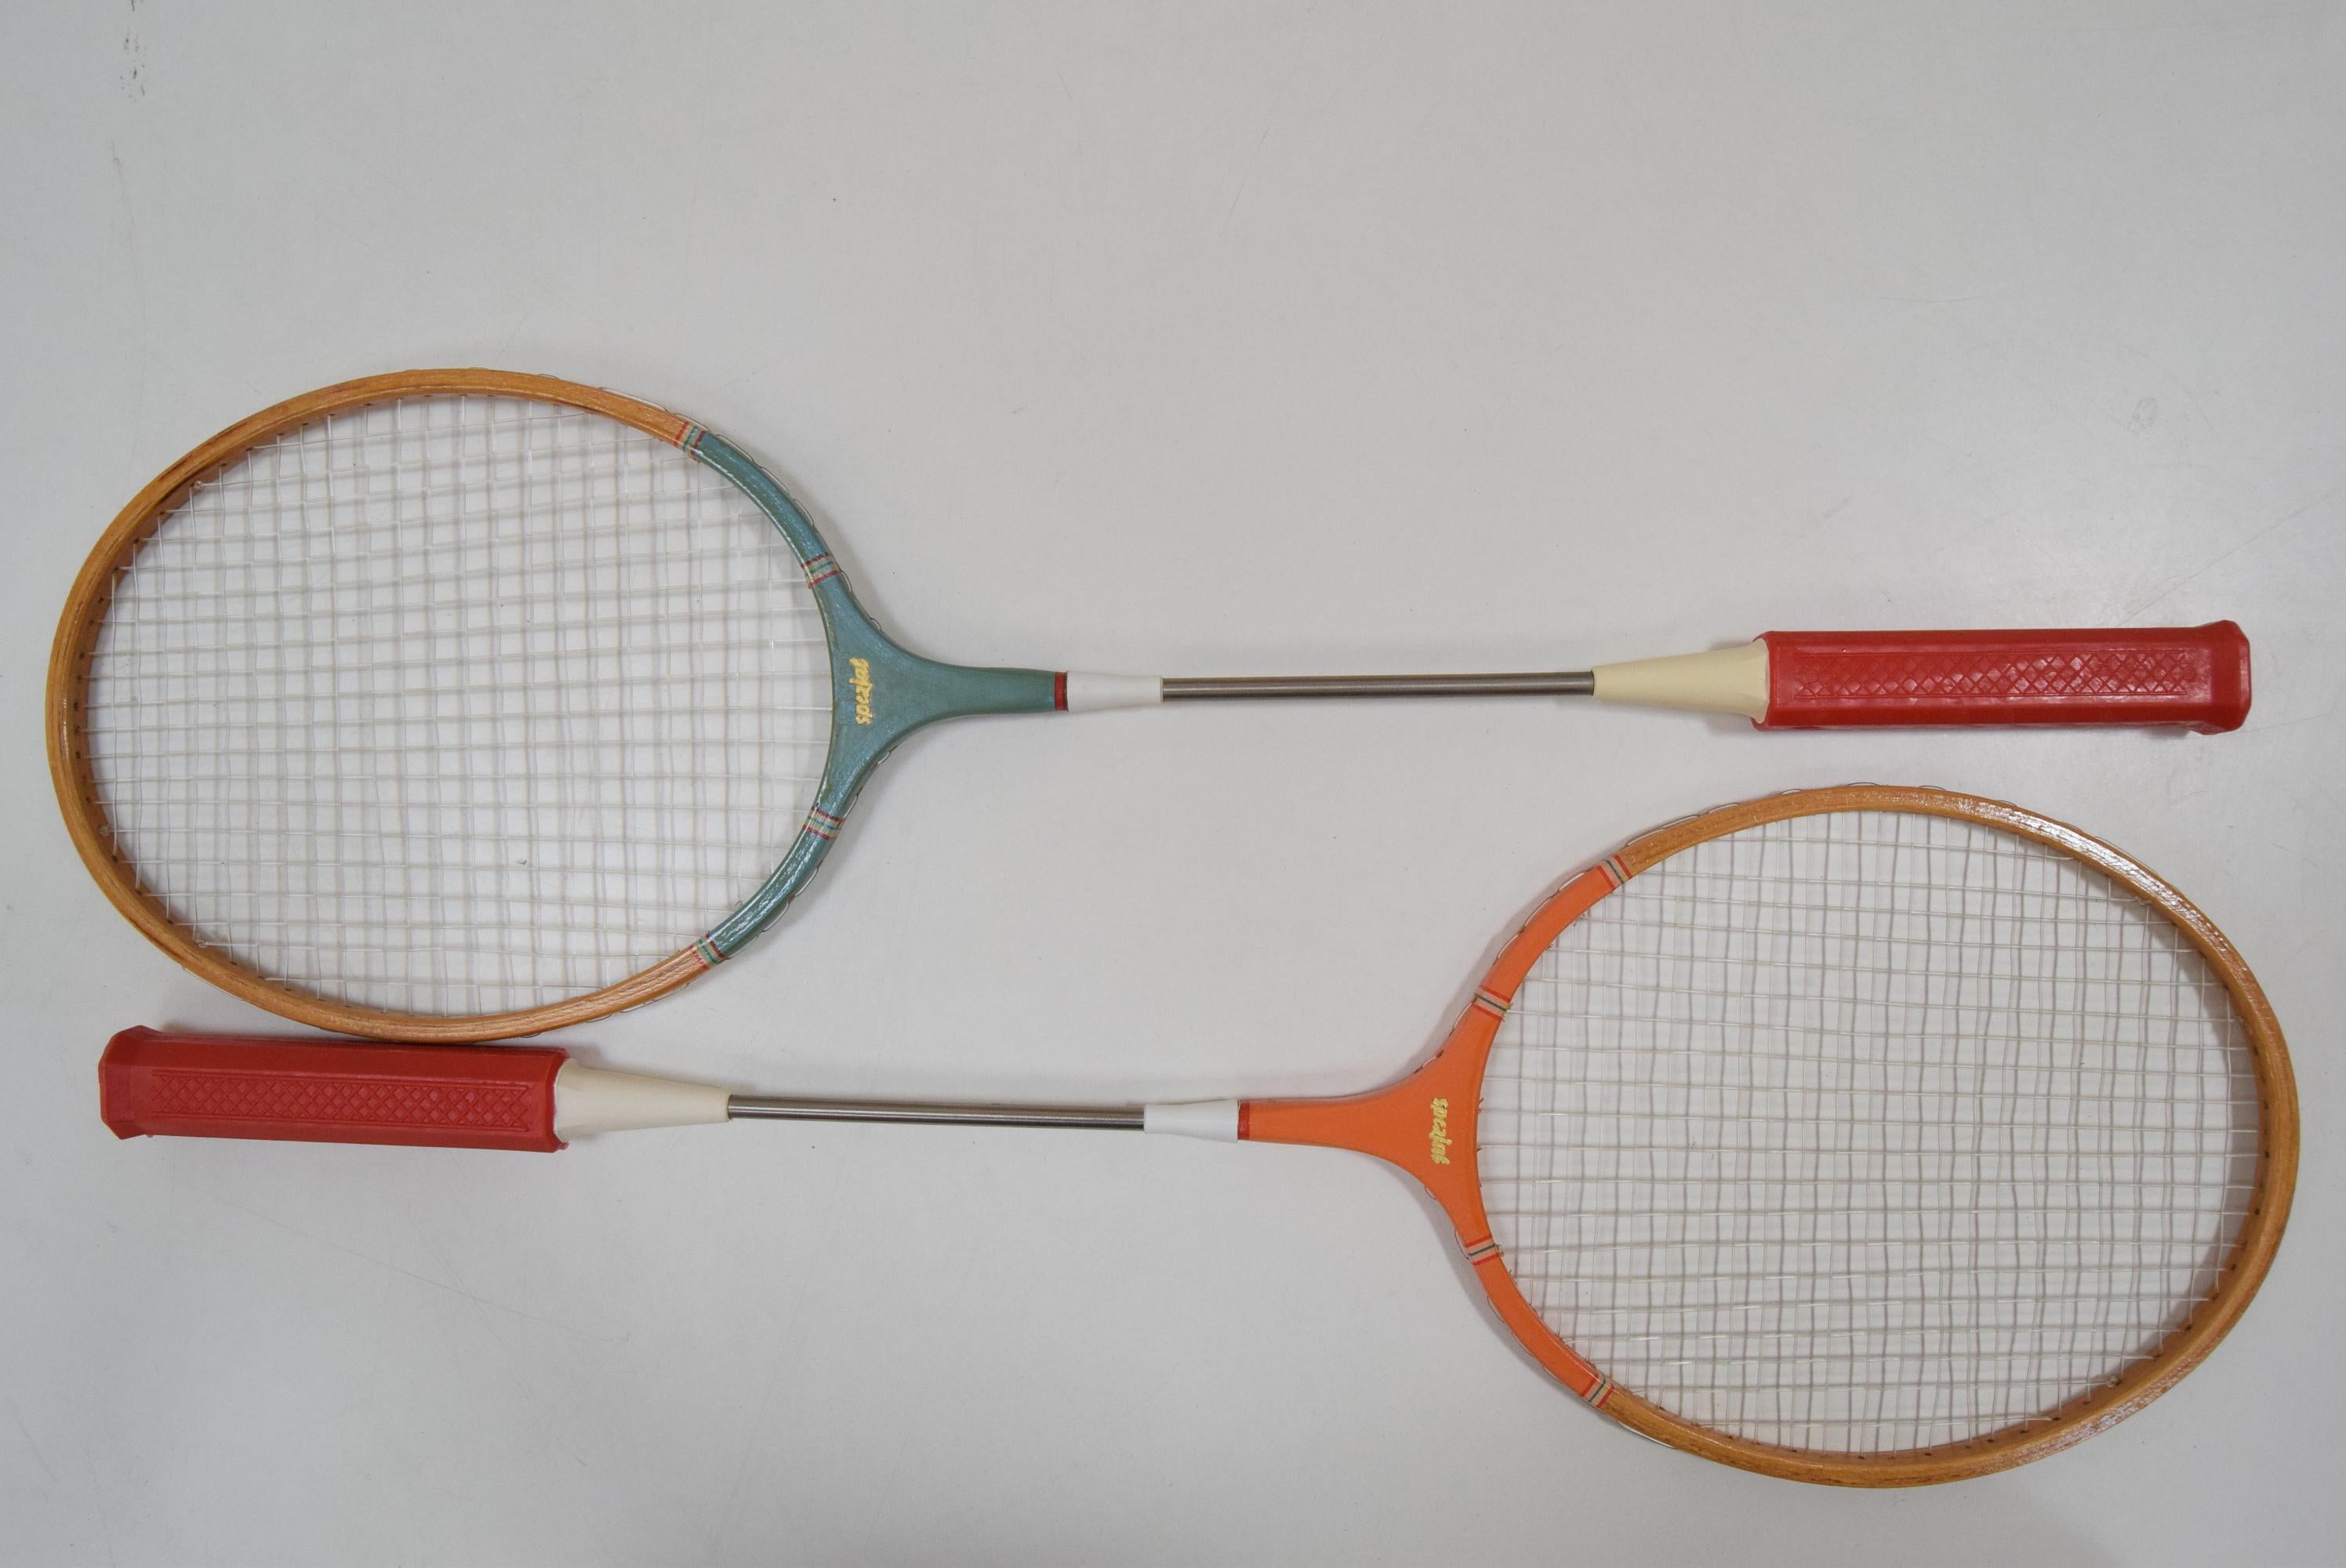 dior badminton racket